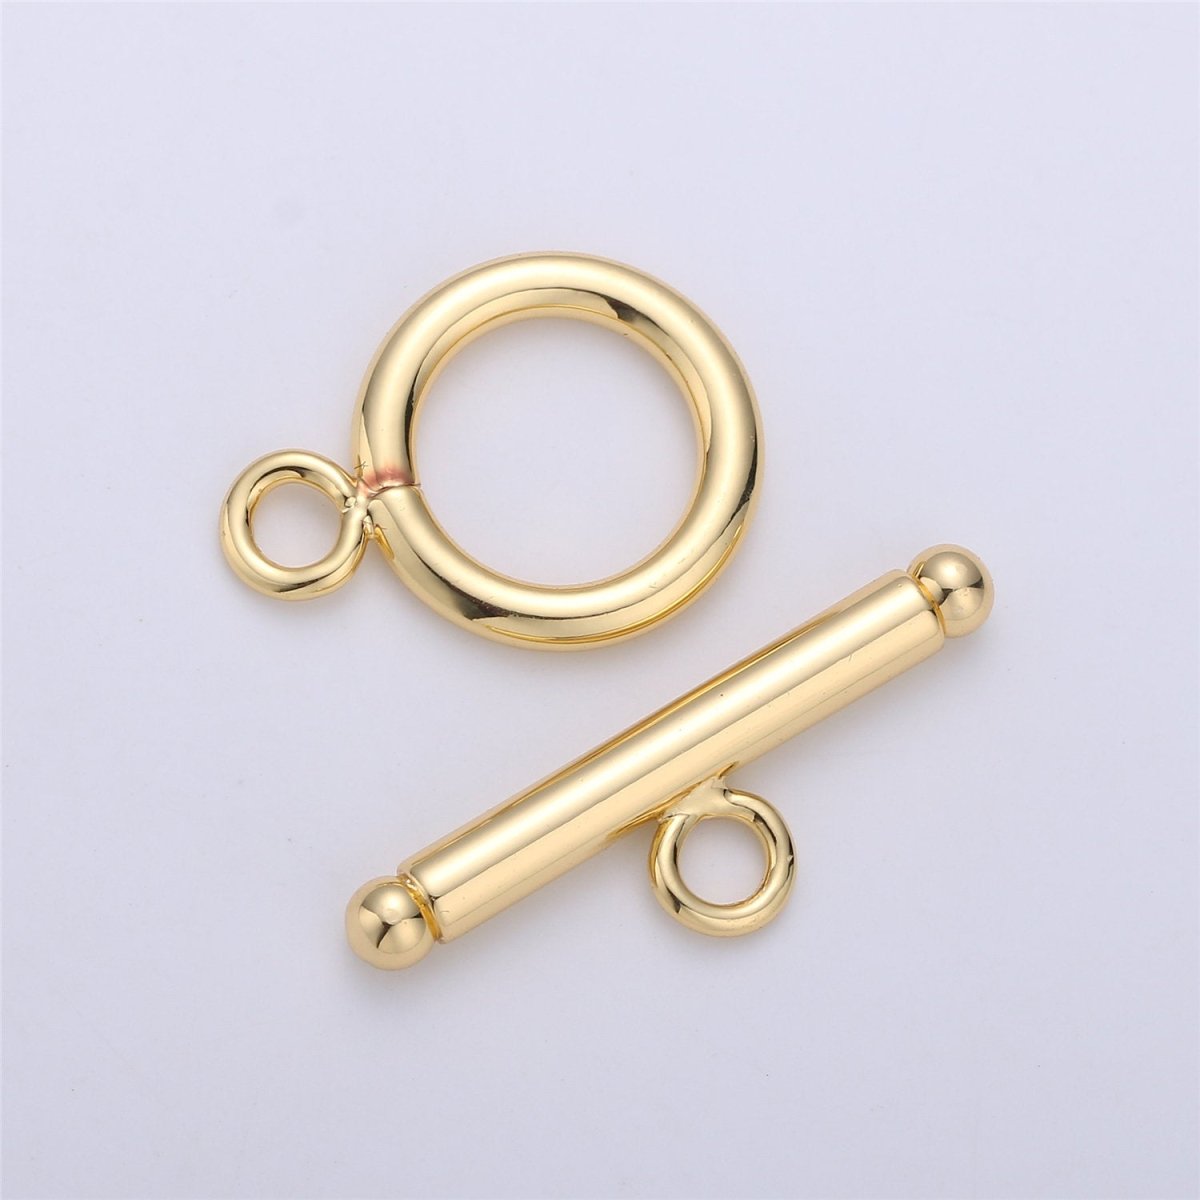 14mm 14K Gold Filled Toggle Clasp OT Clasp Finding for Necklace Bracelet Component K-175 K-556 K-779 K-784 - DLUXCA